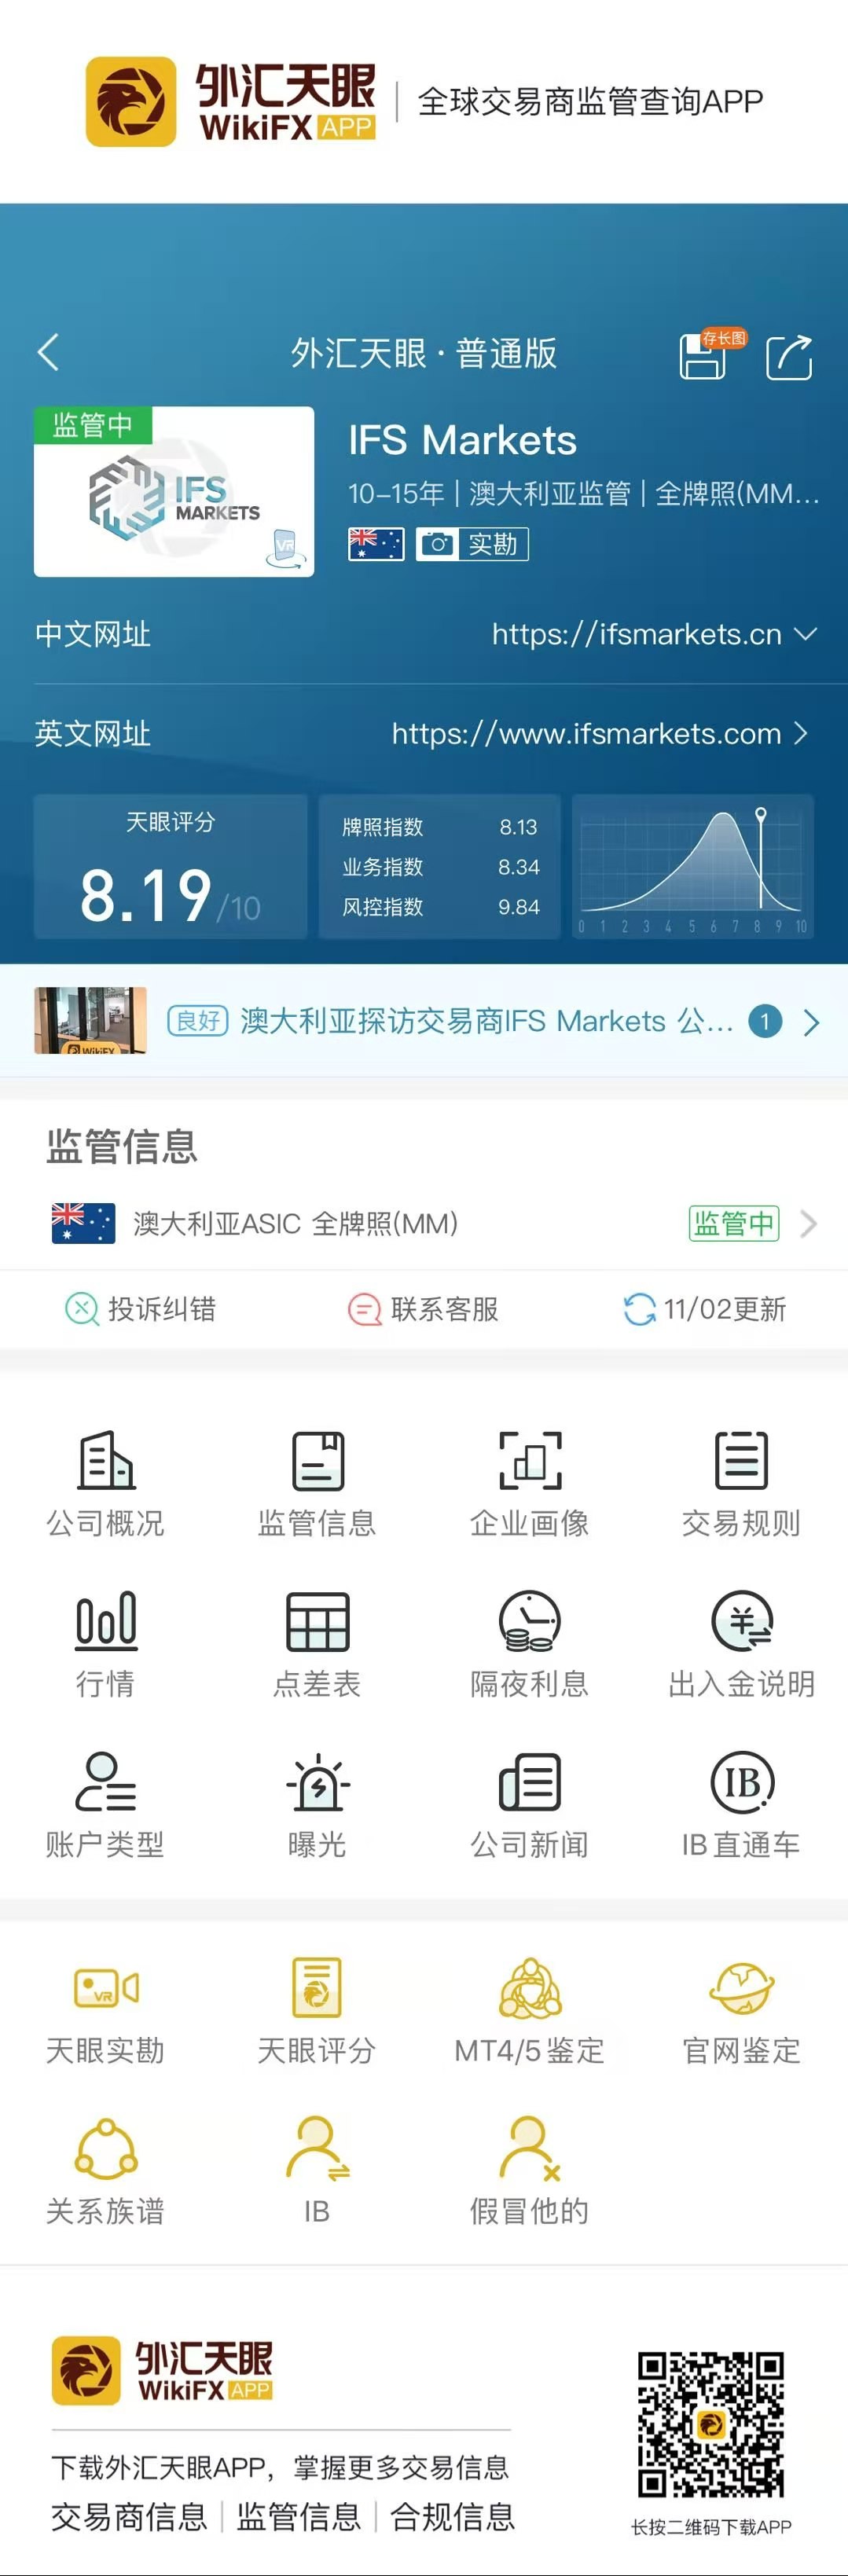 深圳IFSForeign exchange platform investment agency gold50return35426 / author:wallstreetpigs / PostsID:1583920